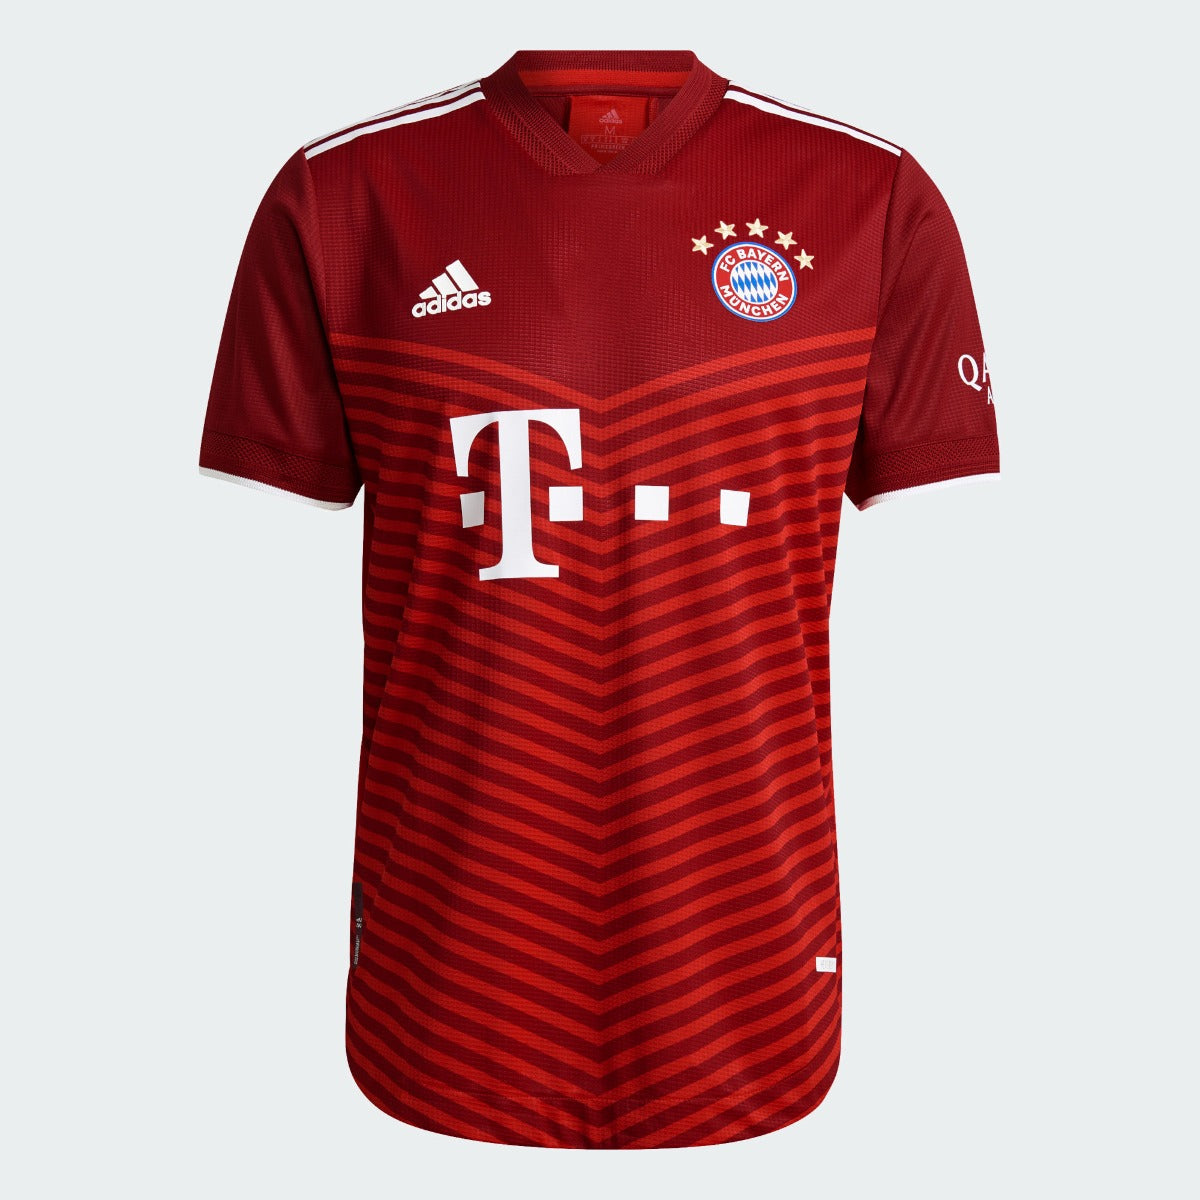 Adidas, Maglia autentica Adidas 2021-22 Bayern Monaco - Rosso scuro